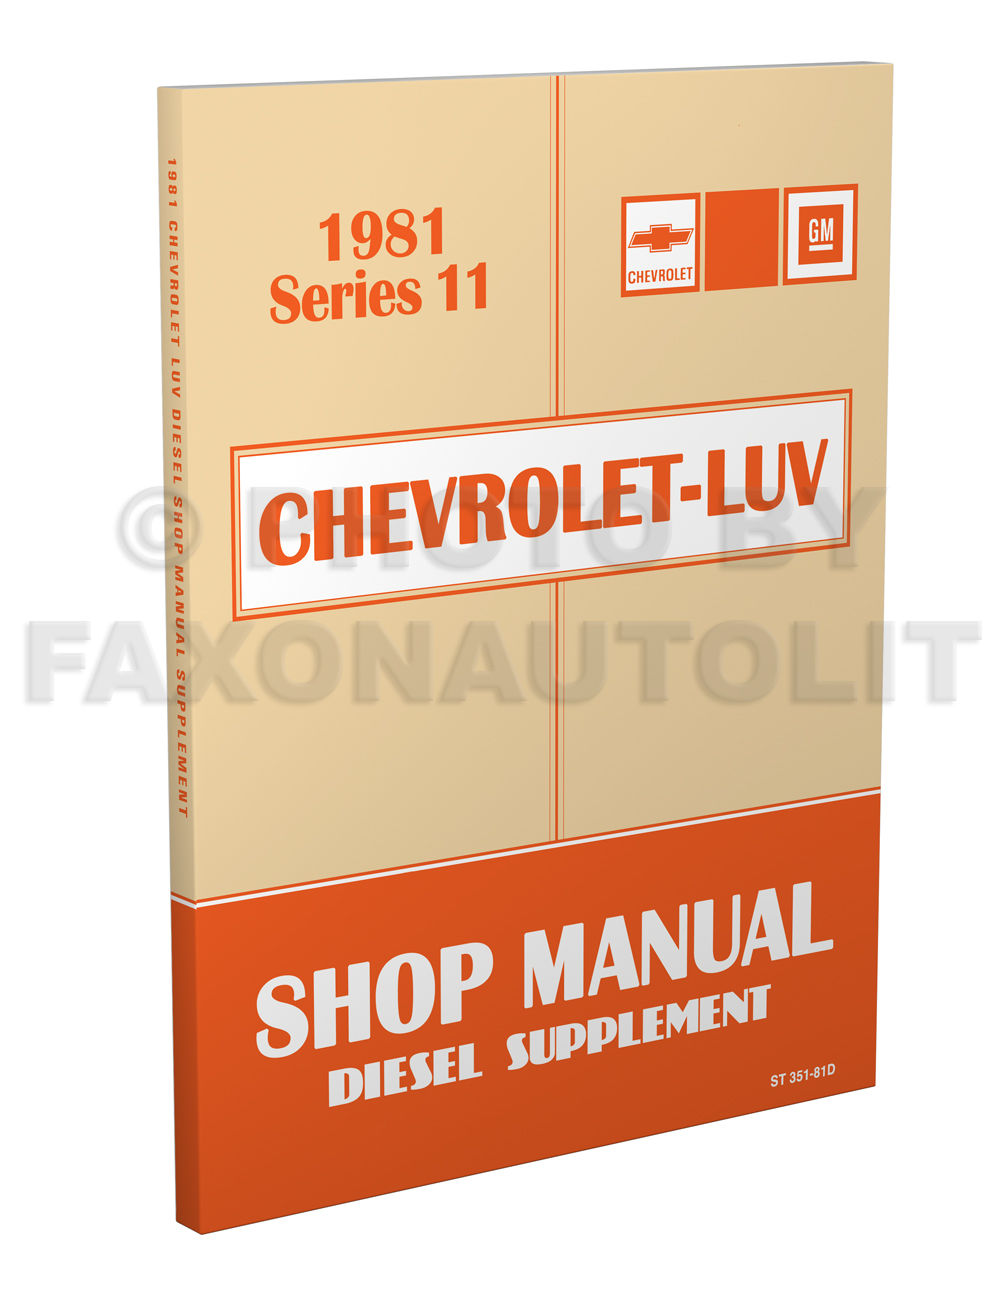 1981 Chevy Luv Diesel Engine Repair Manual Original 